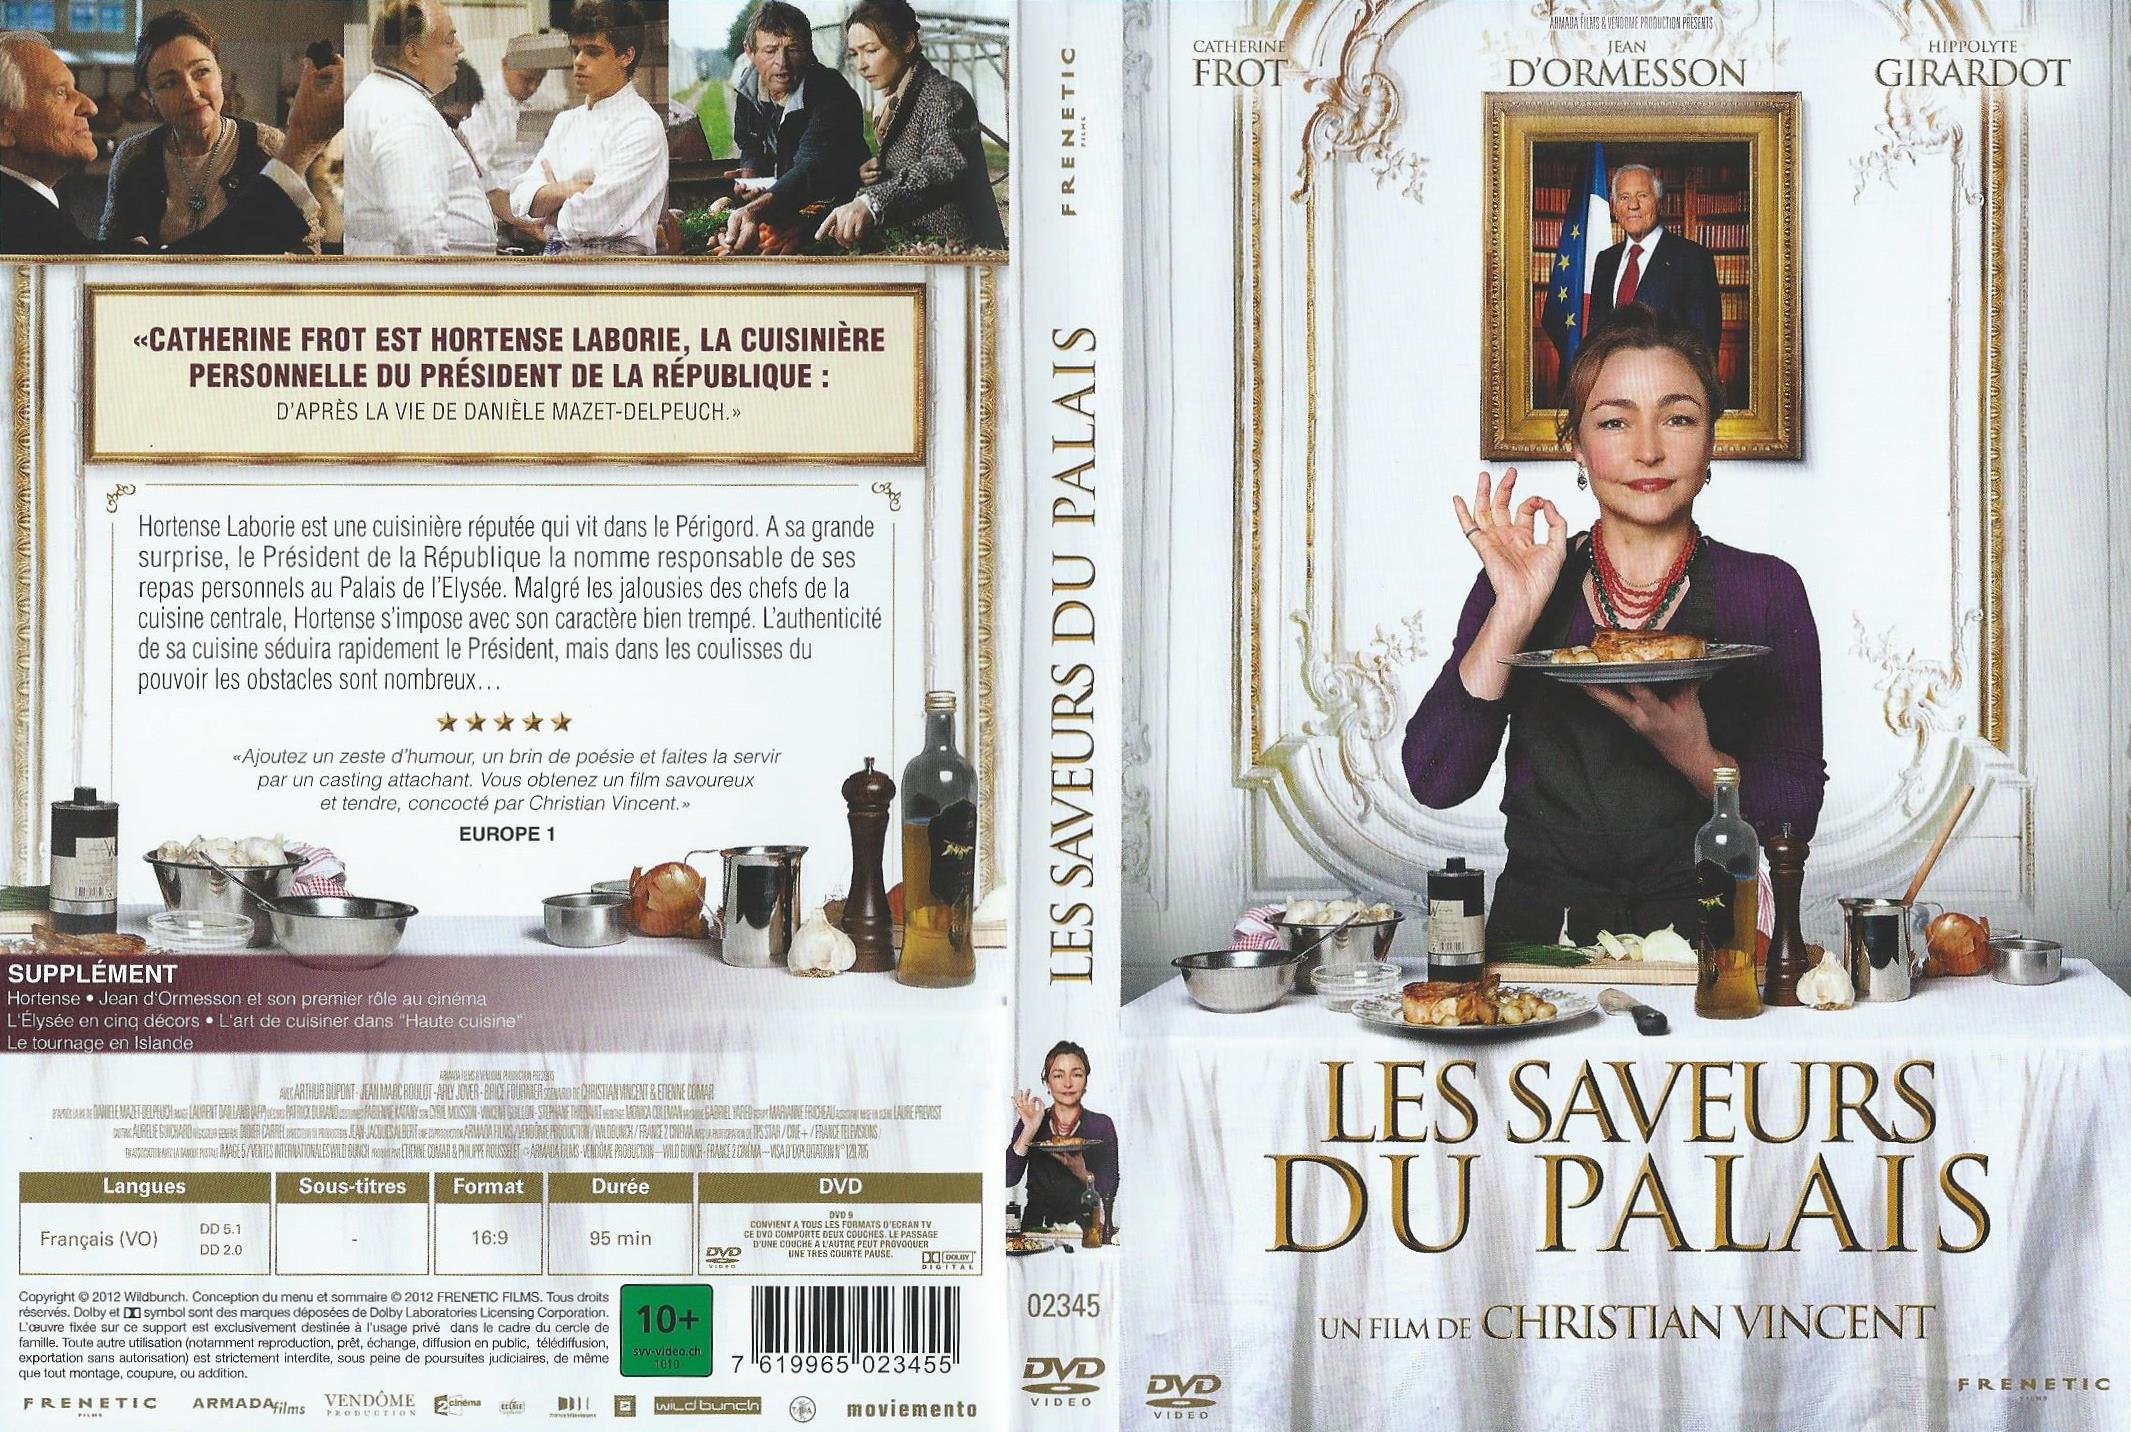 Jaquette DVD Les saveurs du palais v2